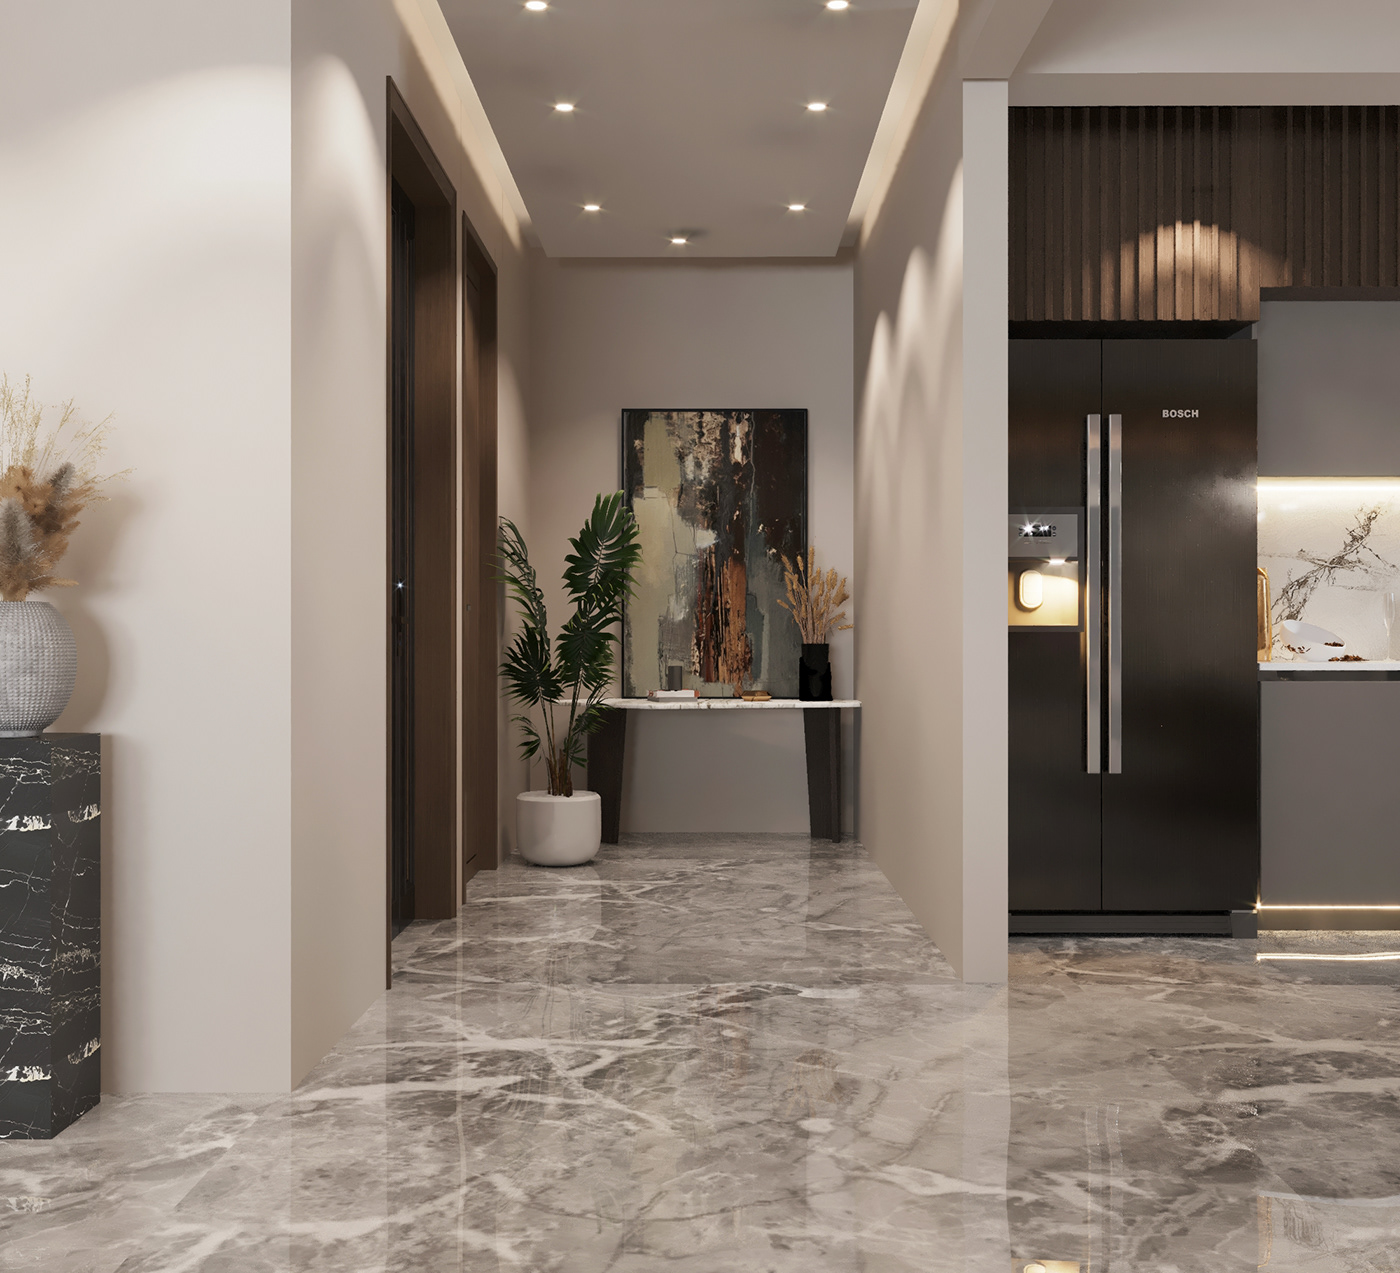 3ds max architecture corona decoration designer elegant interior design  luxury Render visualization